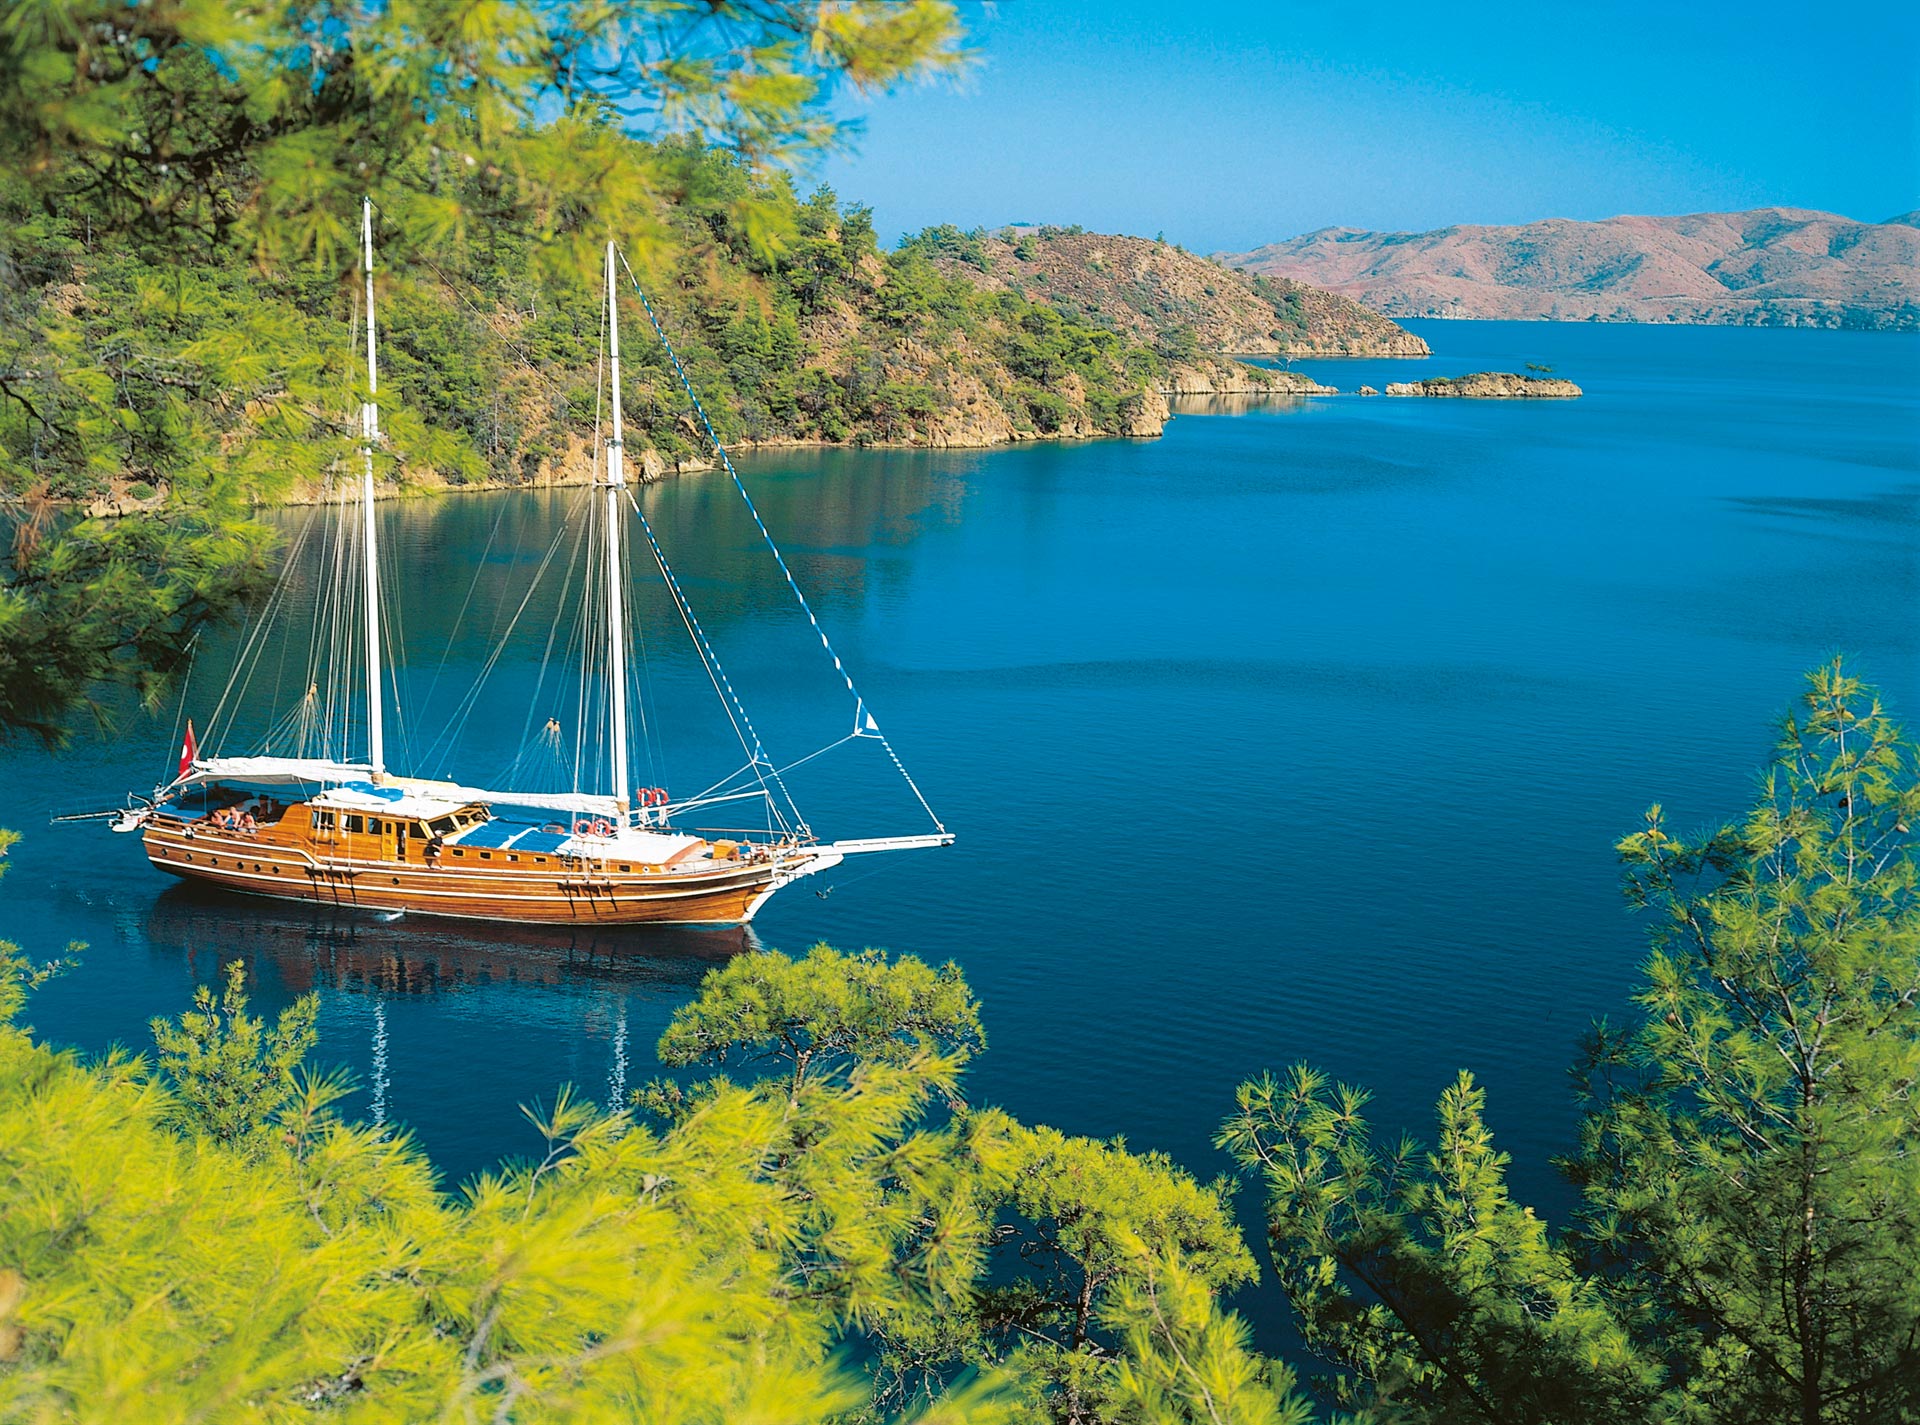 Blue Cruise Turkey Gulet Charter Cruise Boat Cruise Turkey